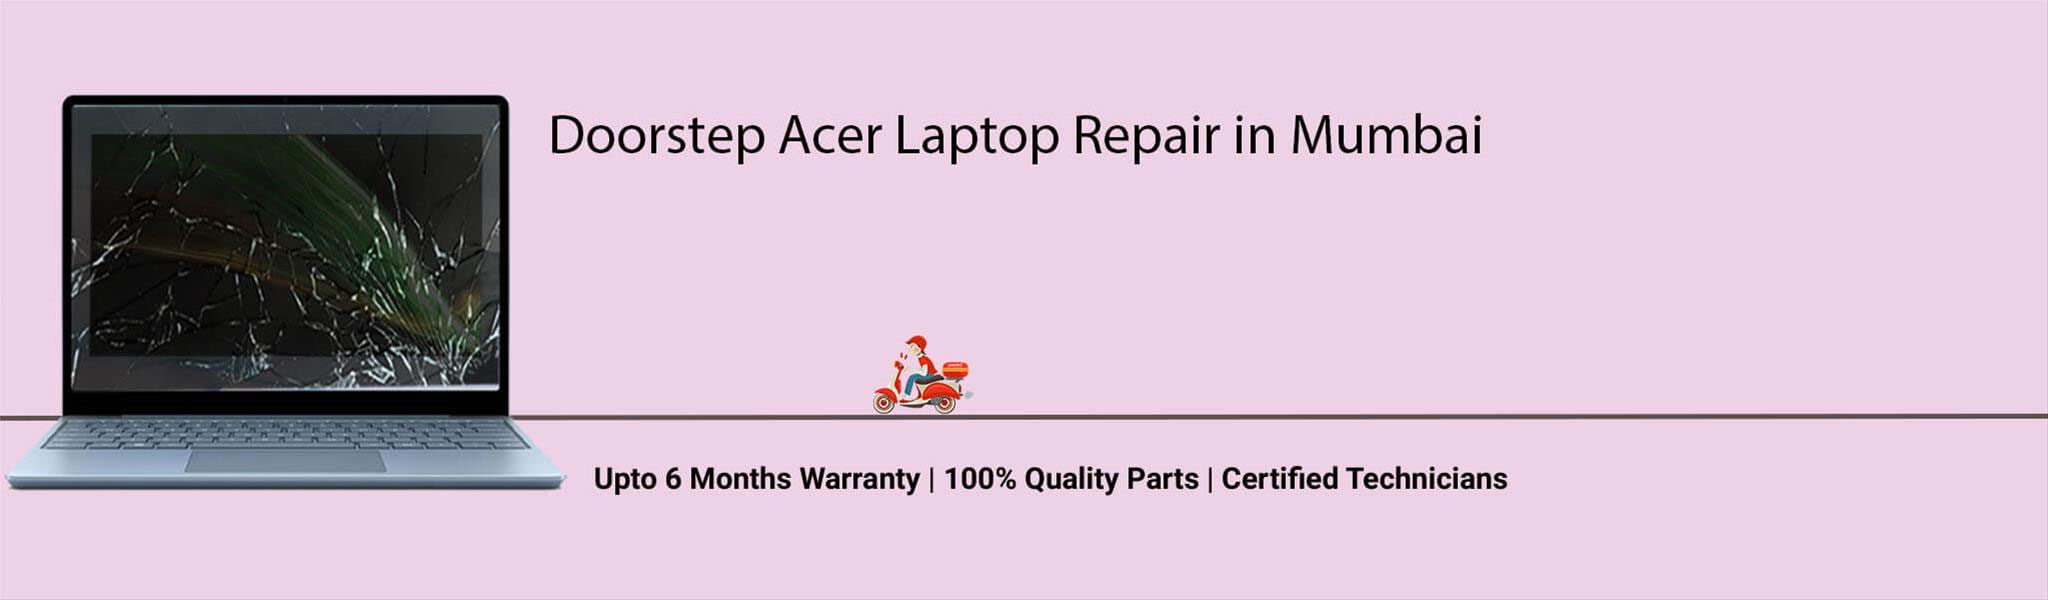 acer-laptop-banner-mumbai.jpg